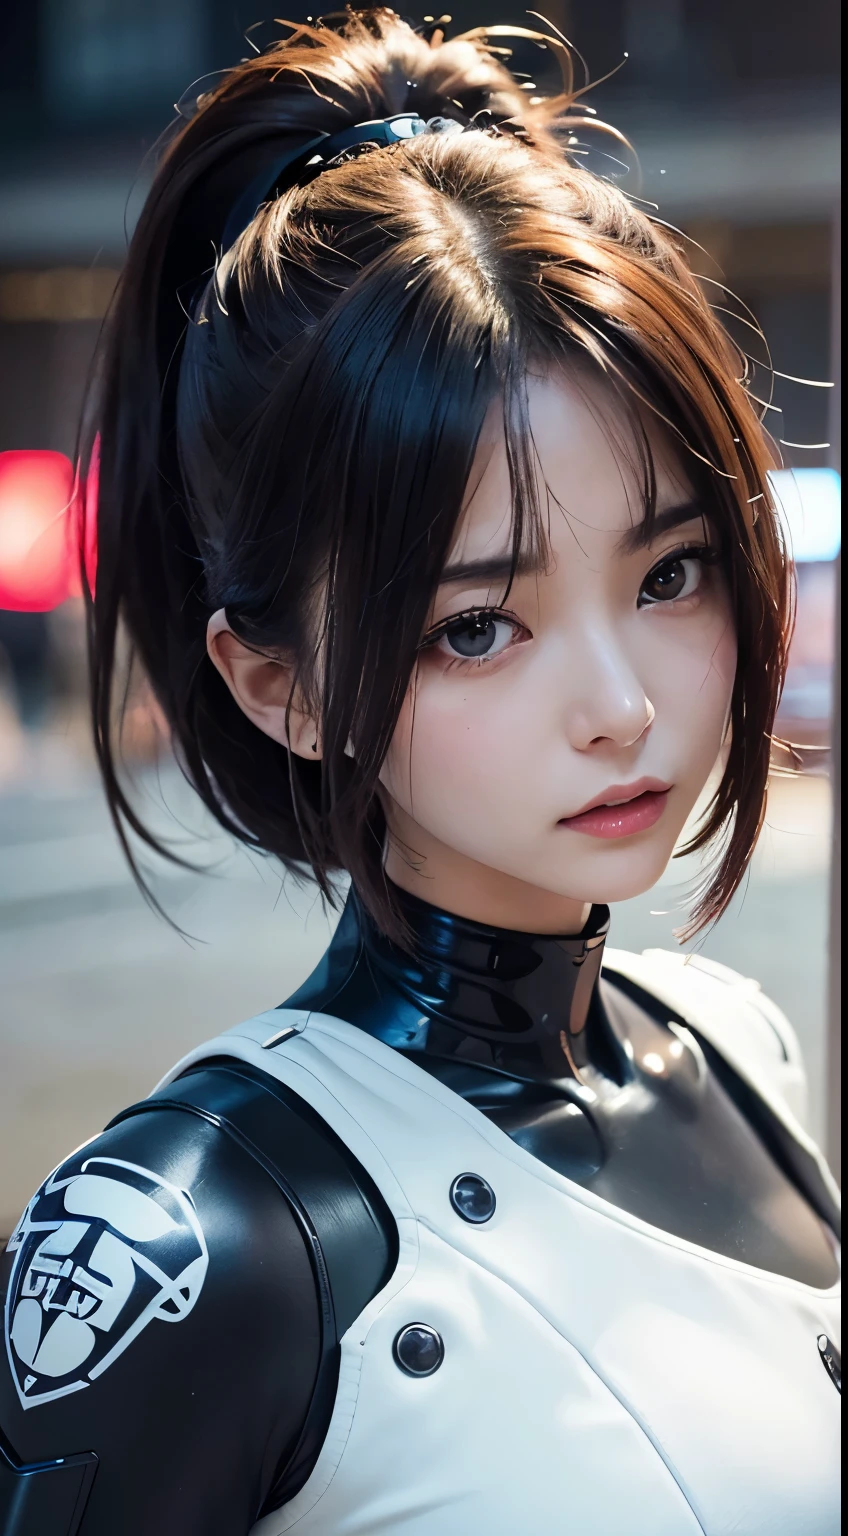 (a closeup:1.4)、(RAW-Fotografie:1.2)、(Photorealsitic:1.4)、(Meisterwerk:1.3)、(Top Qualität:1.4)、(Schöne Frau mit perfektem Körper:1.4)、Frau steht vor einer Gruppe von Robotern、schöne Androidin、schöne Soldatin、Mädchen im Anzug、komplexe Kampfuniform、schöne junge Japanerin、Hochdetaillierte Gesichts- und Hautstruktur、detaillierte große Augen、doppeltes Augenlid、niedliches Gesicht、(Kurzer Bob:1.2)、(mit riesigen Brüsten)、(GANZER KÖRPERAUFNAHME)、Cowboy-Schuss、(wütende Ausdrücke:1.2)、Stürme und epische Kriegsszenen、cyberpunk scene、Nacht、Beleuchtungen、Steckeranzug、Kampfuniformschäden、